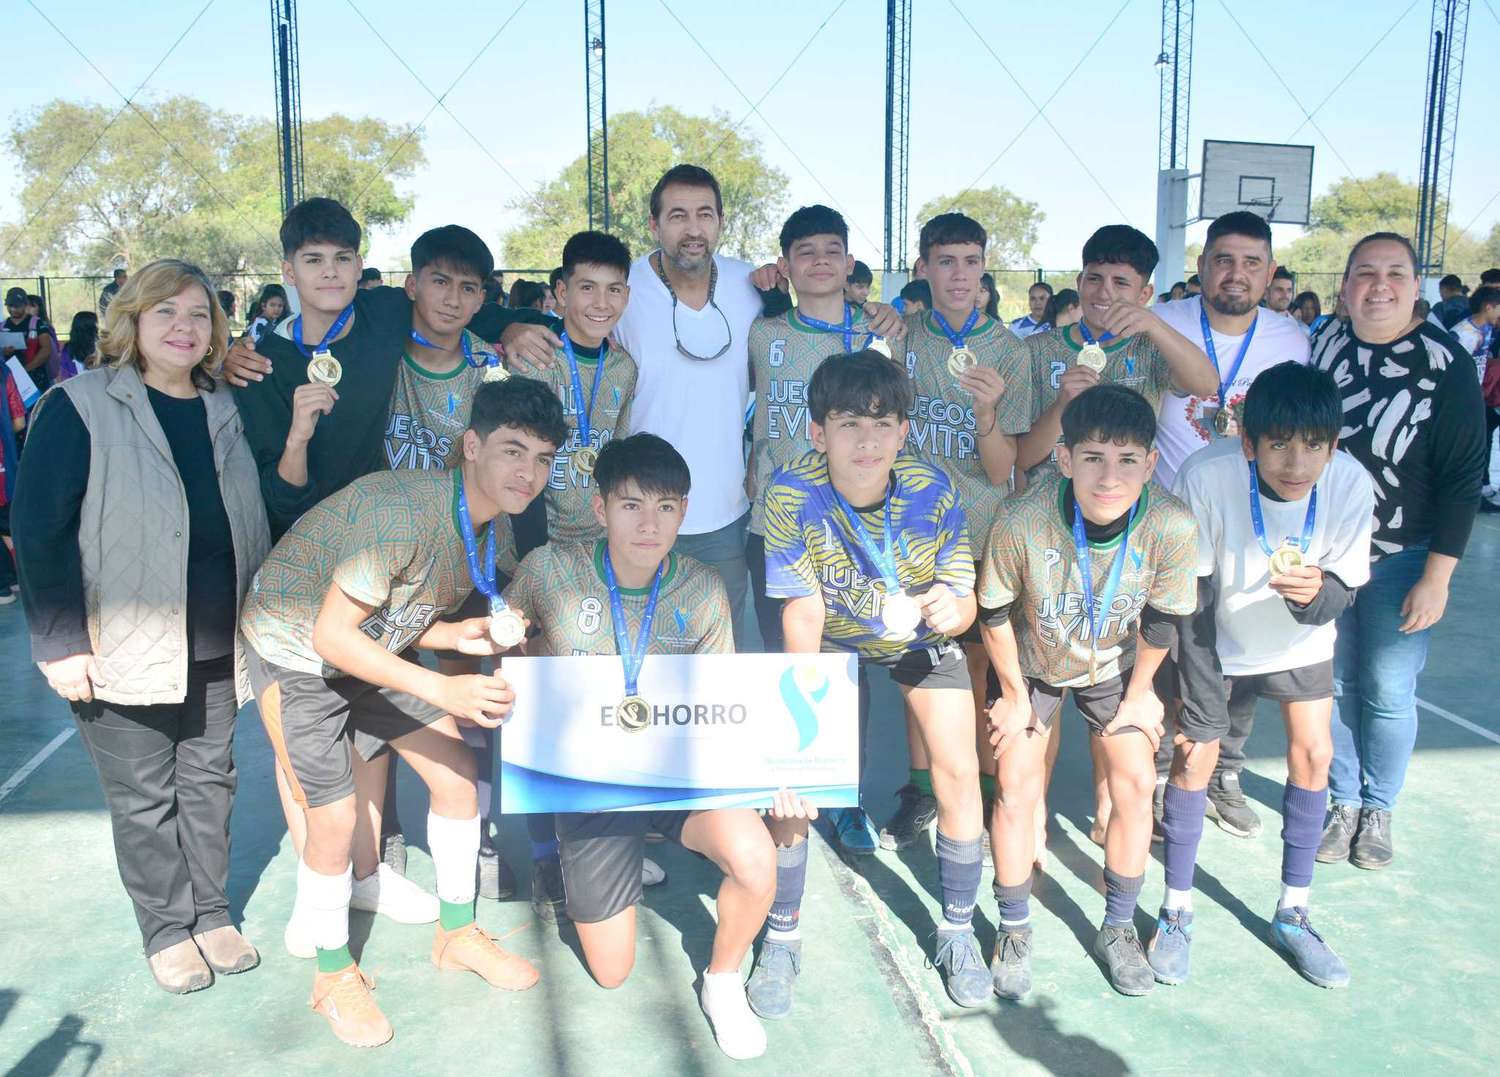 El Chorro y Juárez ganaron
el provincial de futsal sub 15